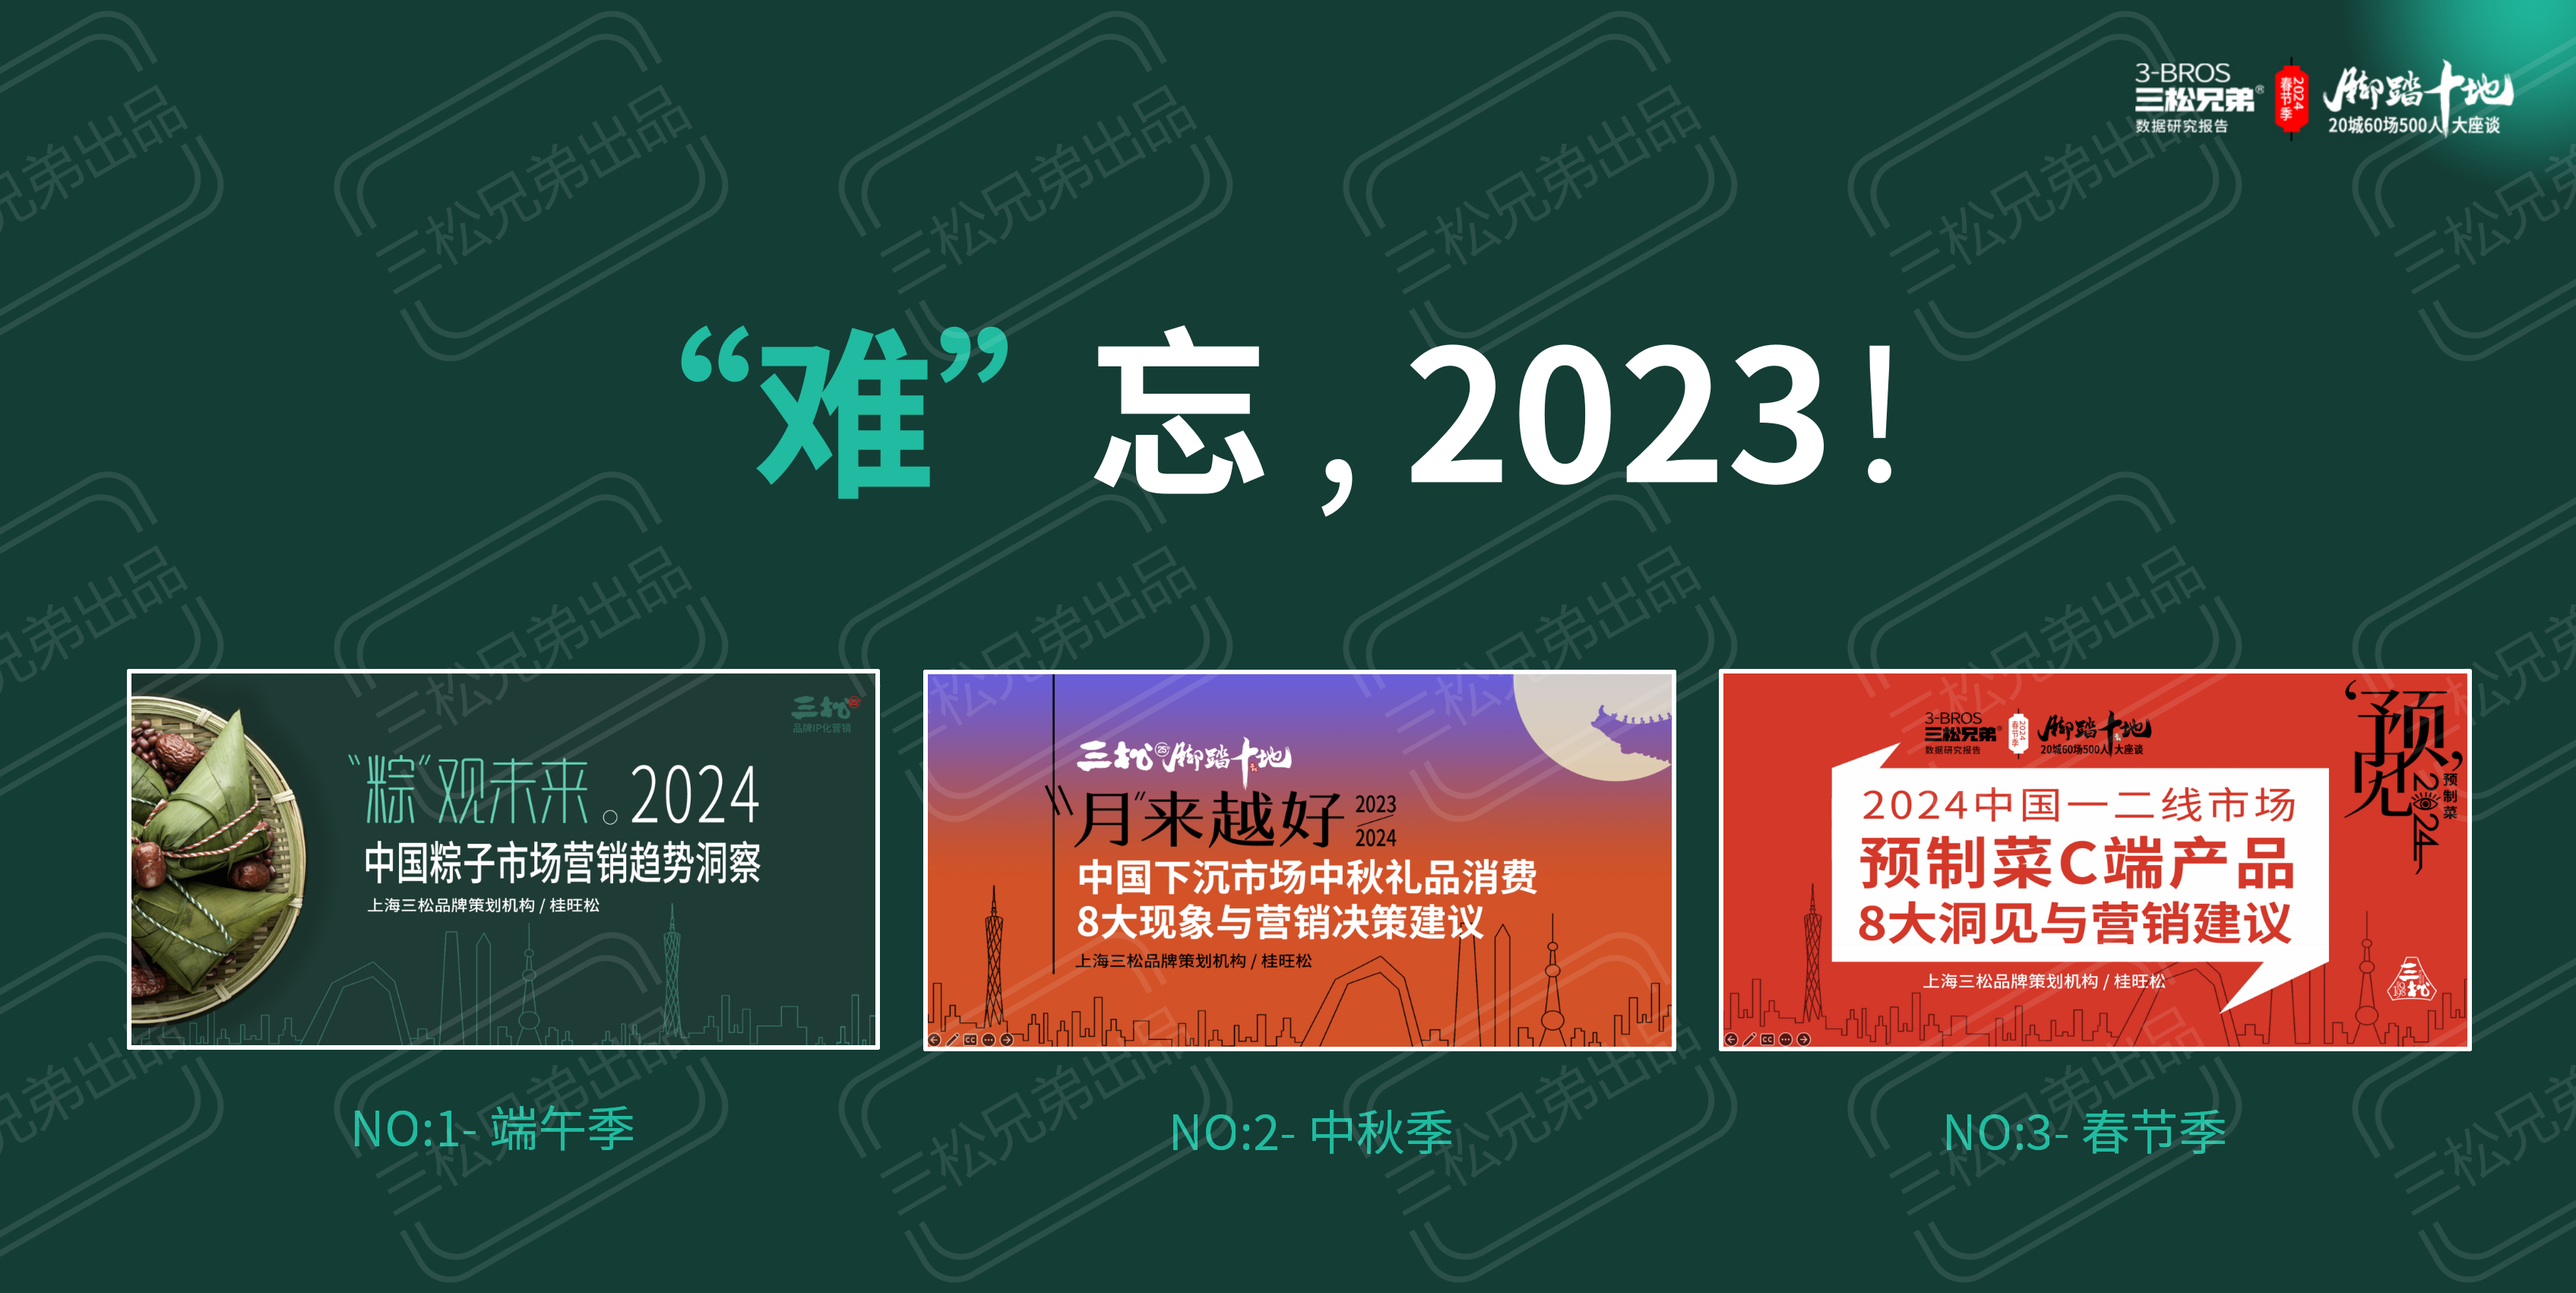 2024中国一二线市场预制菜C端8大洞见与营销建议改(1)_03.png